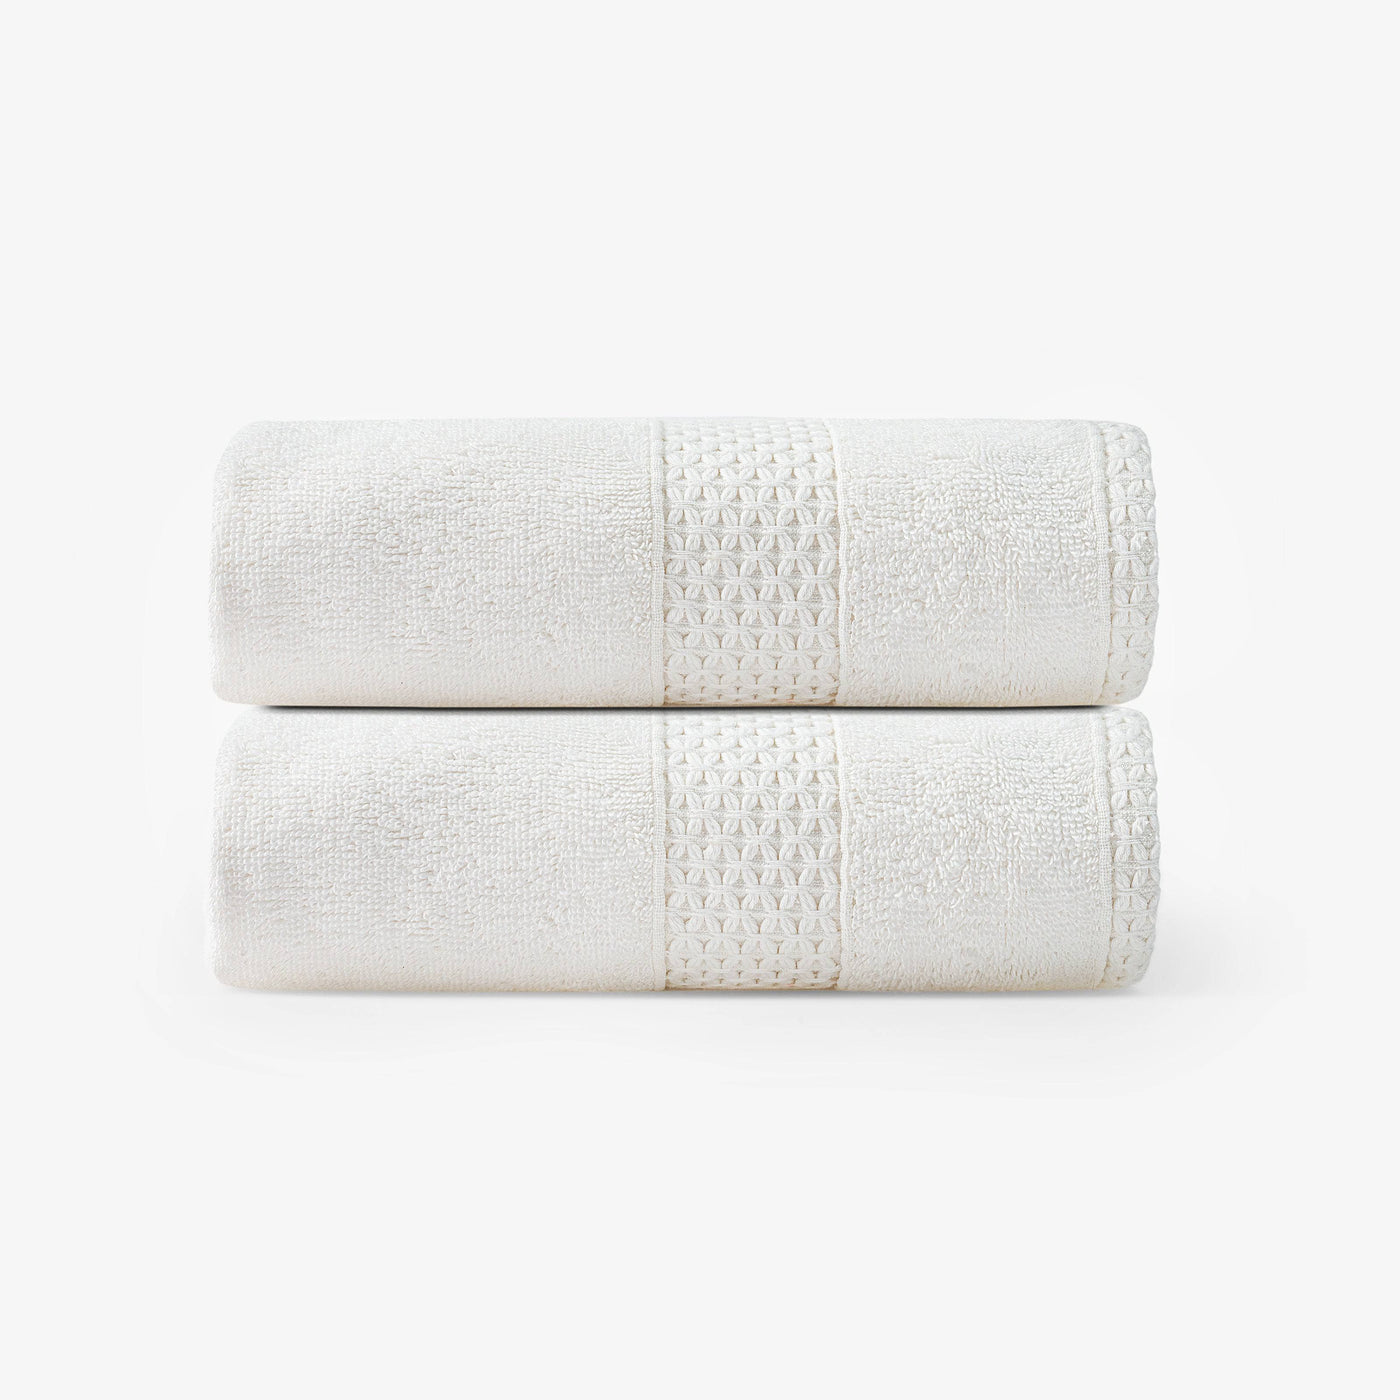 Aqua Fibro Set of 2 Extra Soft 100% Turkish Cotton Hand Towels, Off-White Hand Towels sazy.com